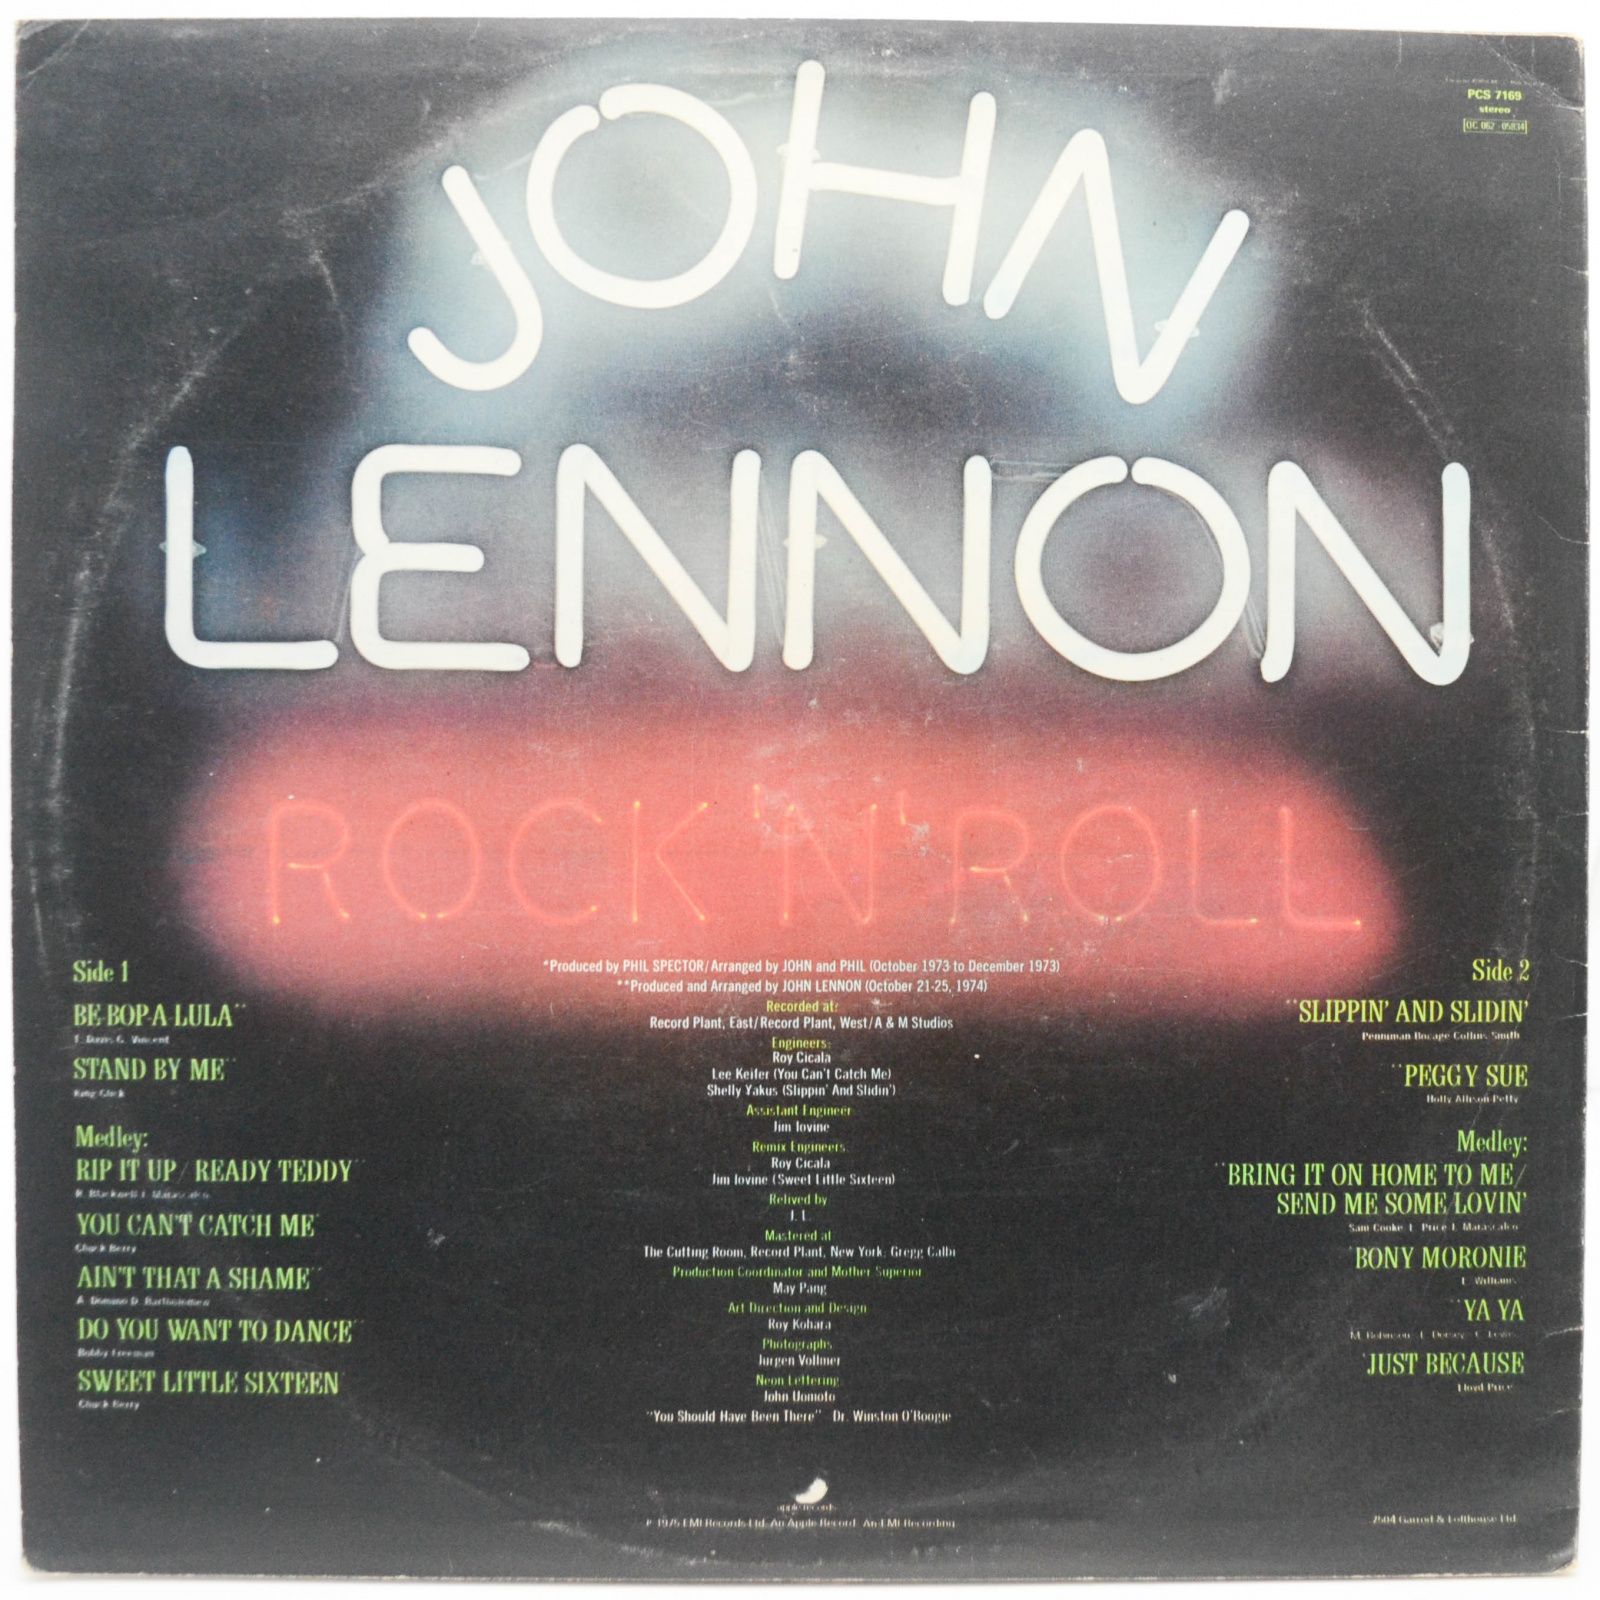 John Lennon — Rock 'N' Roll (UK), 1975